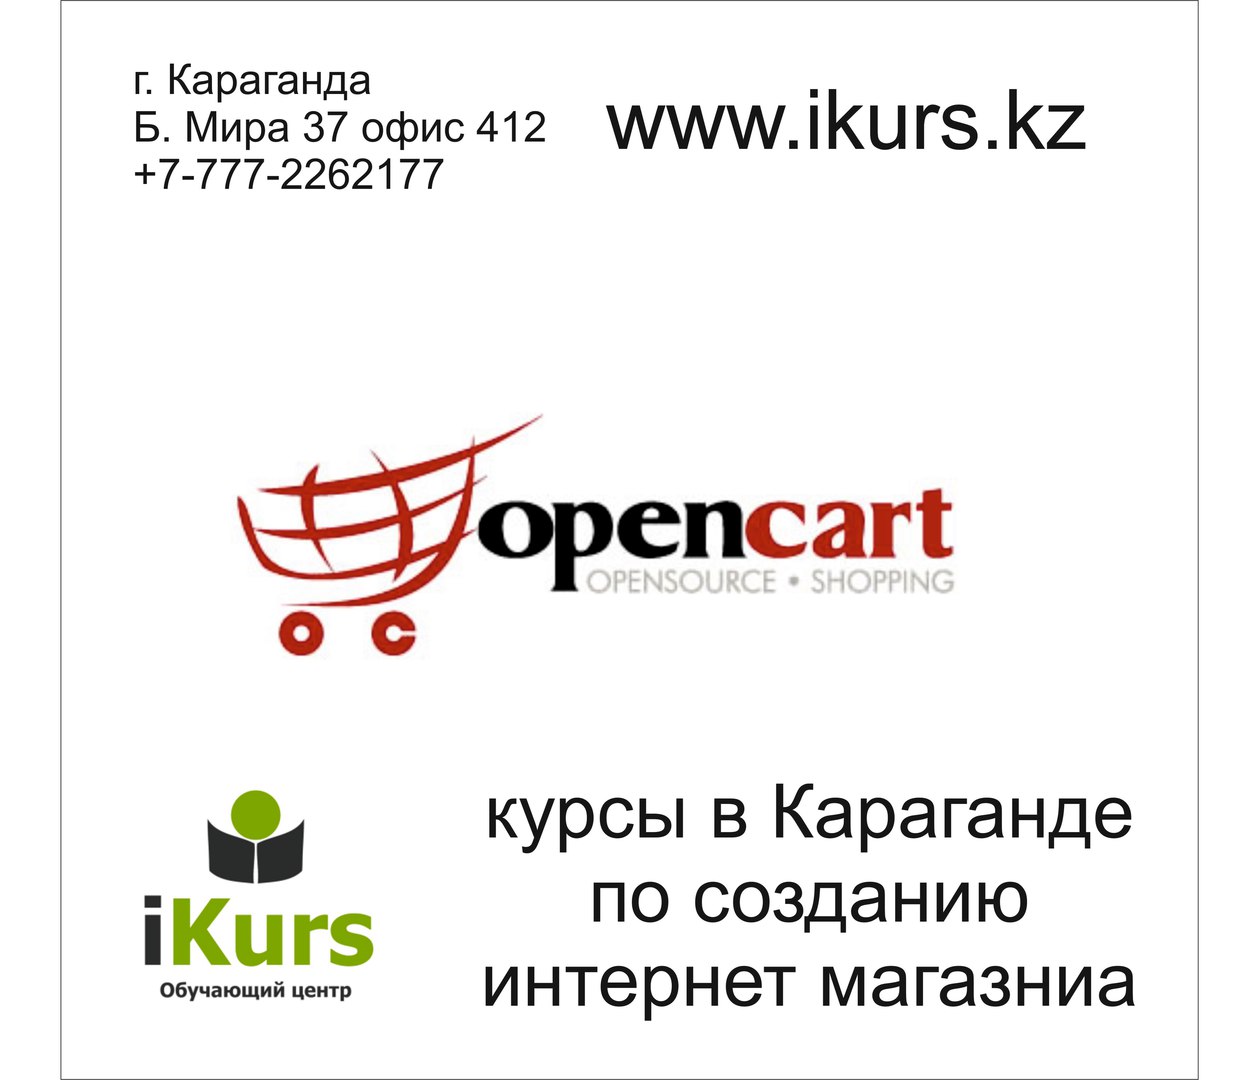 Курсы по созданию интернет магазина на движке opencart. Центр Ikurs в Караганде